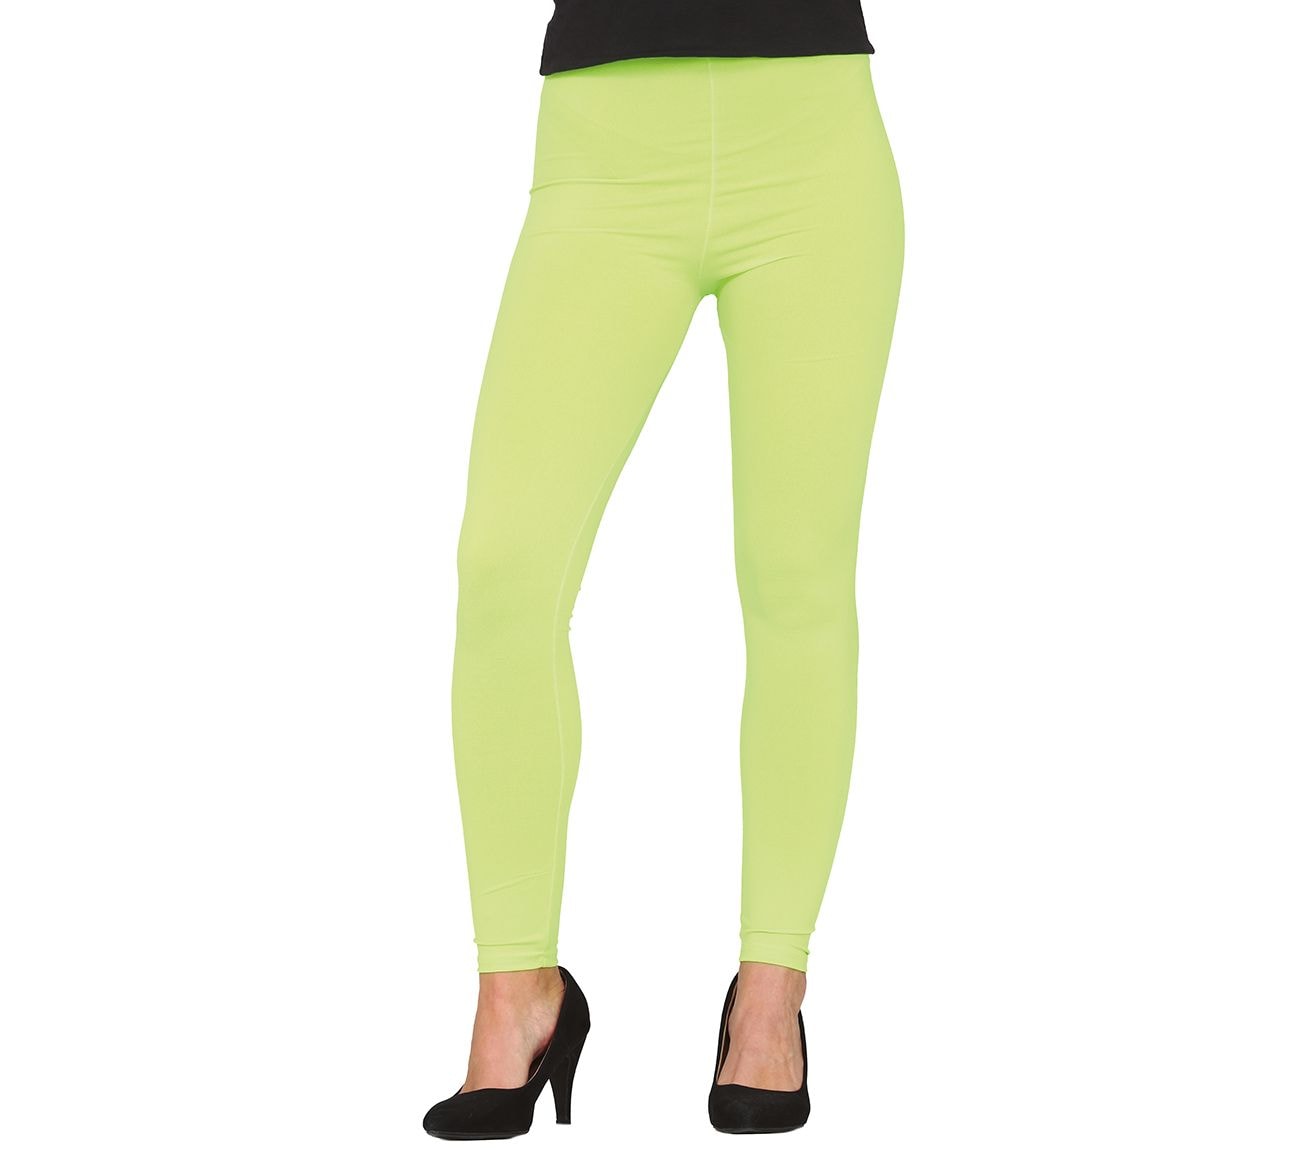 Neon groene legging dames